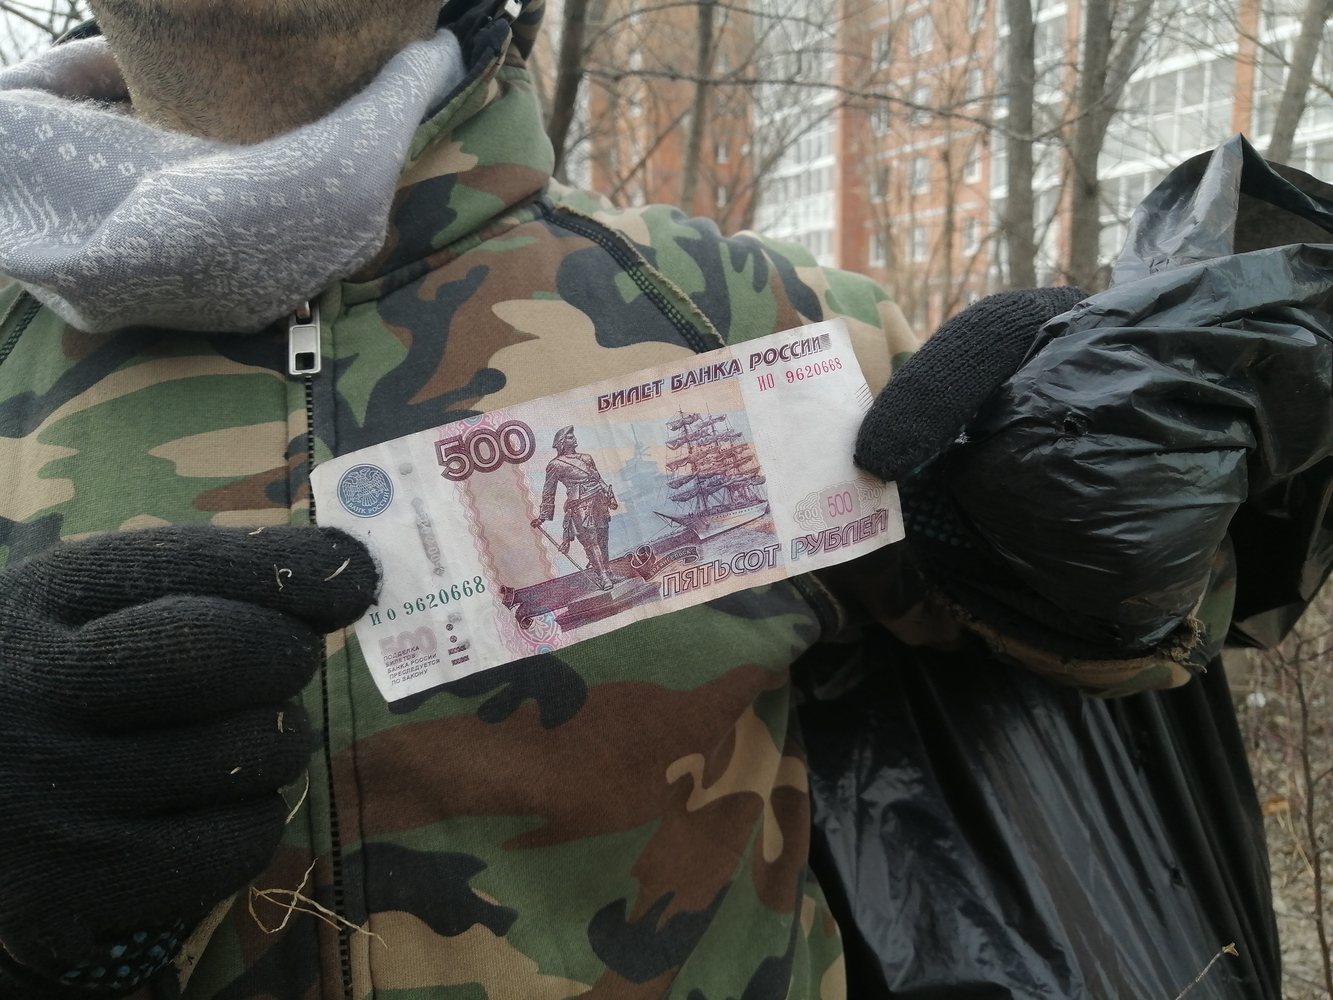 Хабаровчане вышли на субботник и насобирали денег, электроники и «медяшки»: фото находок